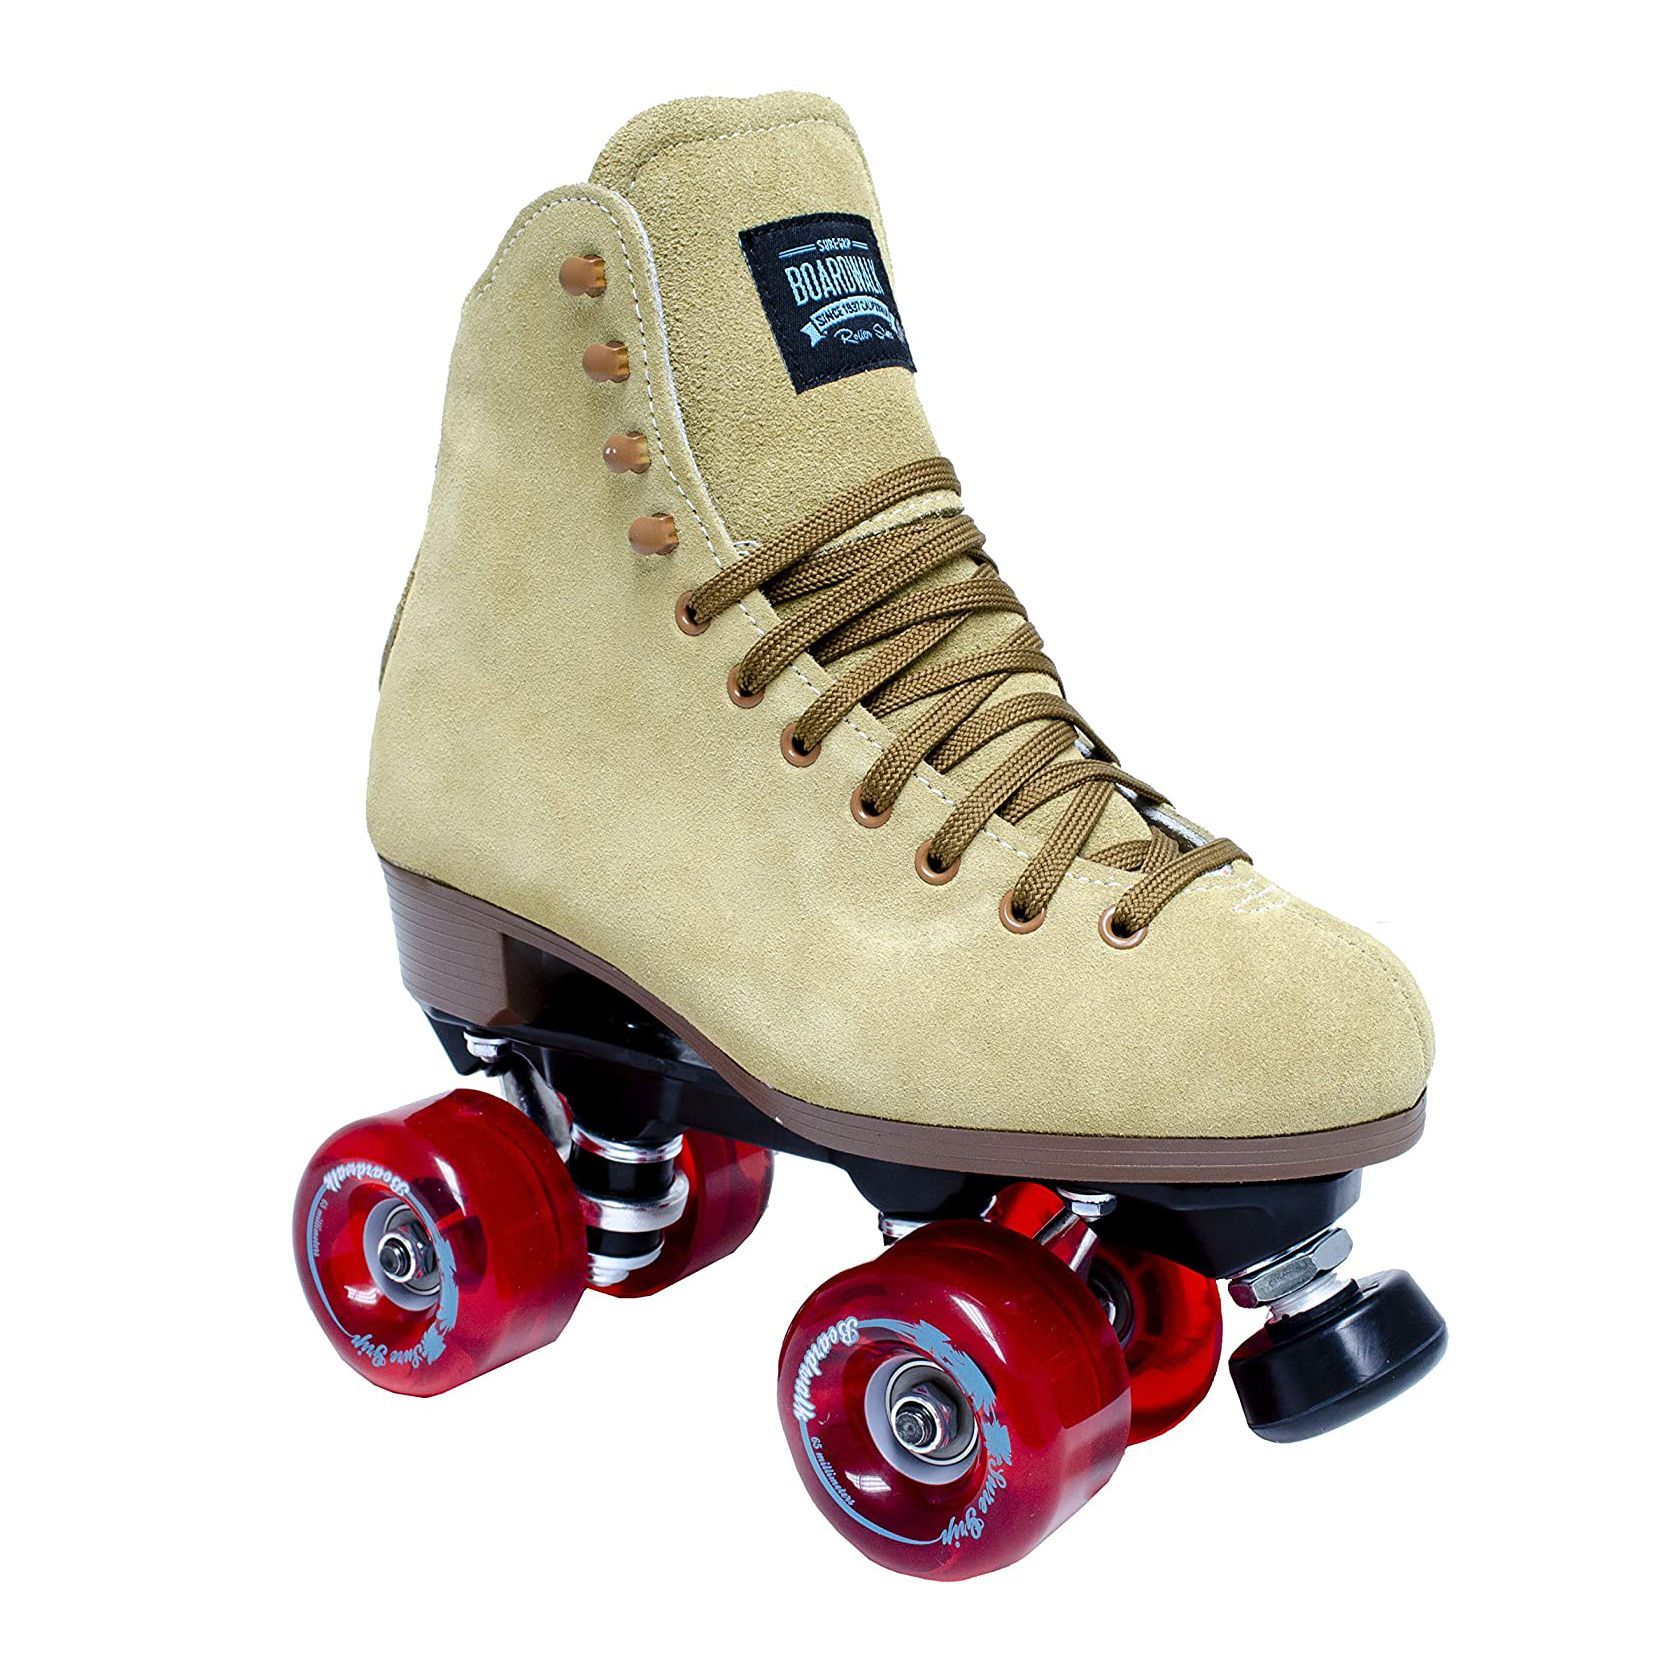 Mondoberfläche Mount Bank Graben indoor outdoor roller skates ...